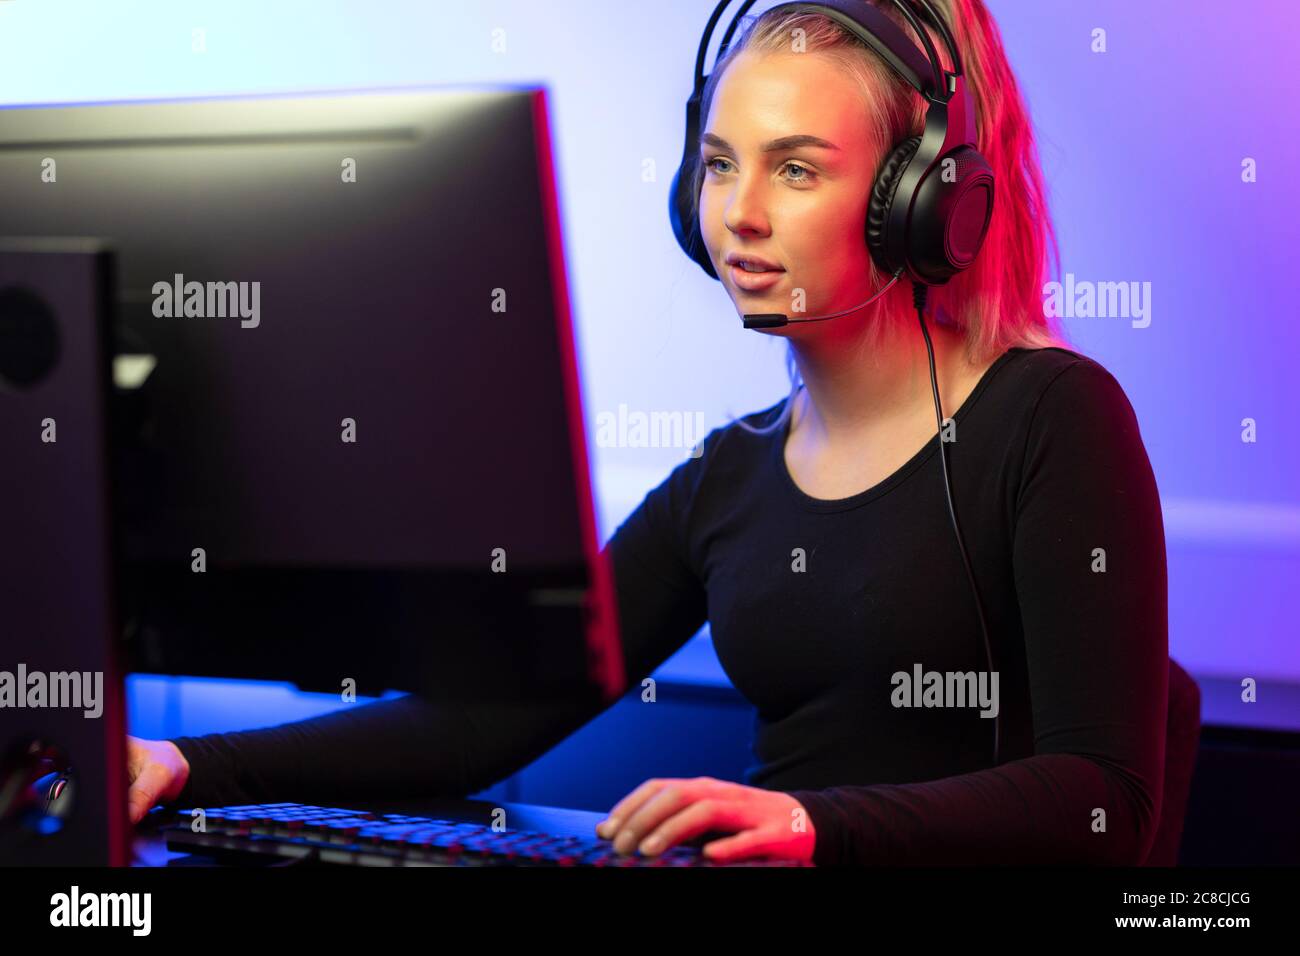 Professionnel E-sport gamer Girl avec casque jouer en ligne jeu vidéo sur PC Banque D'Images